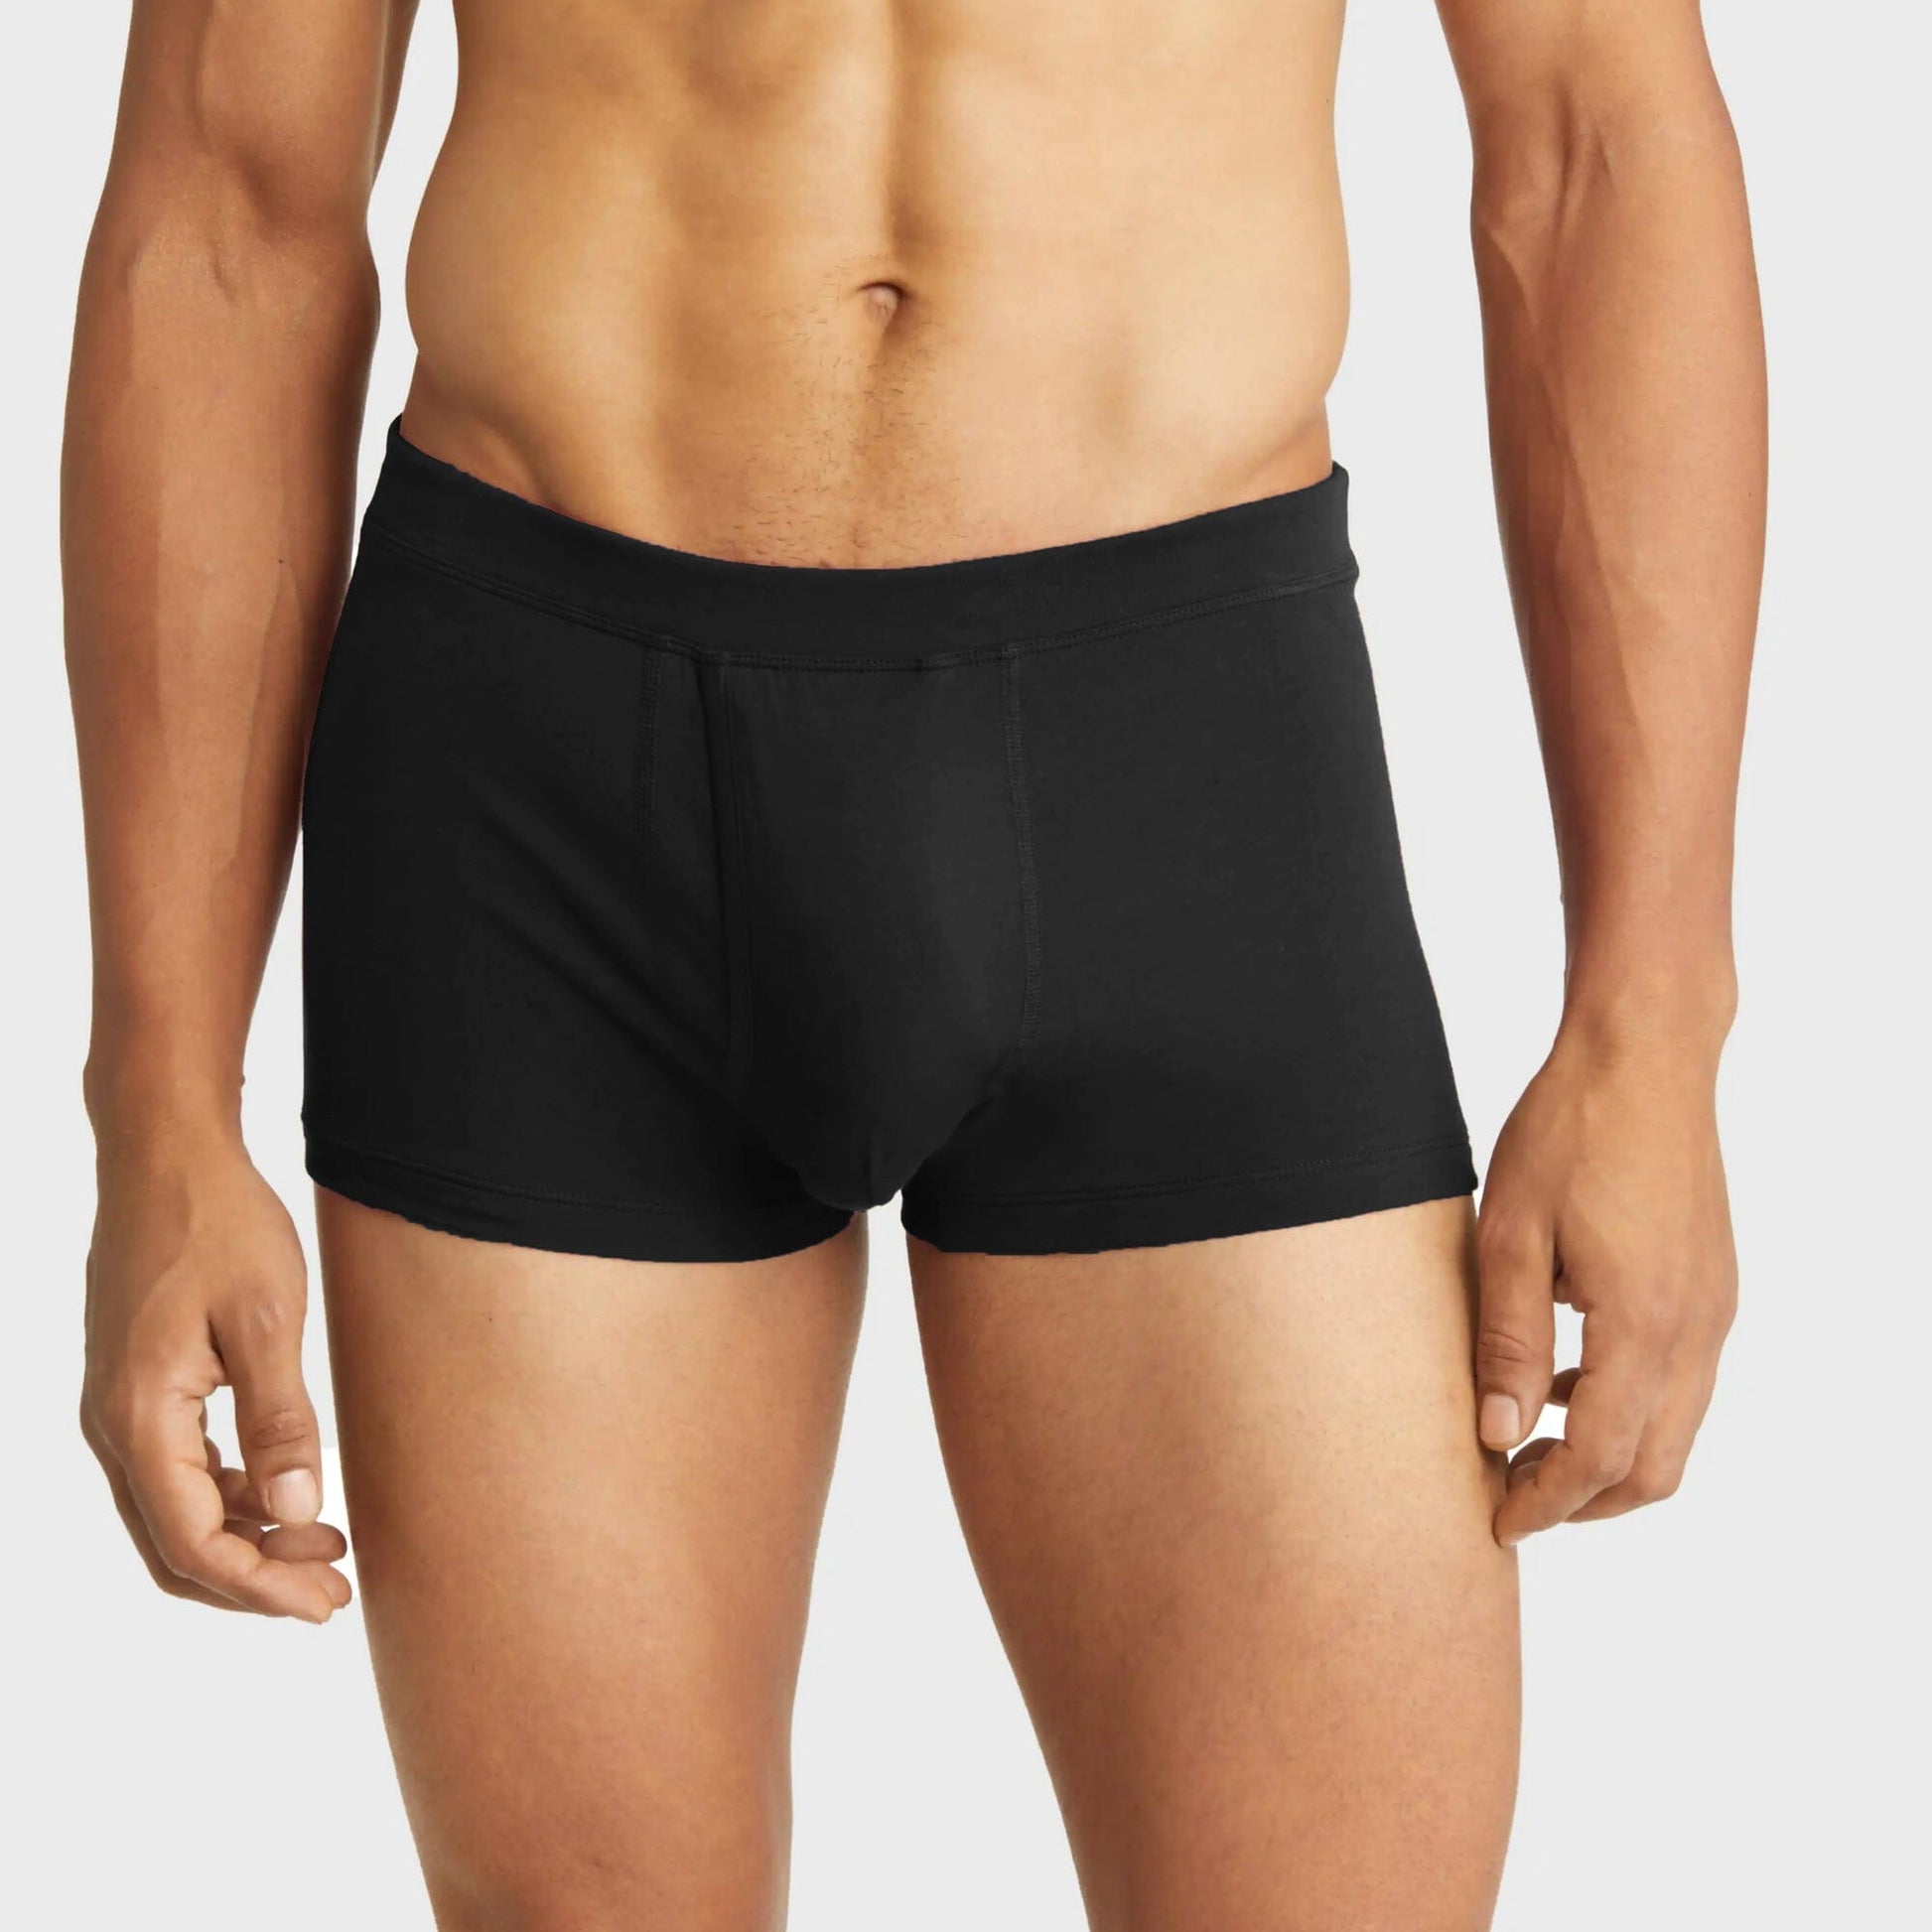 Premium Men's Underwear by HANRO